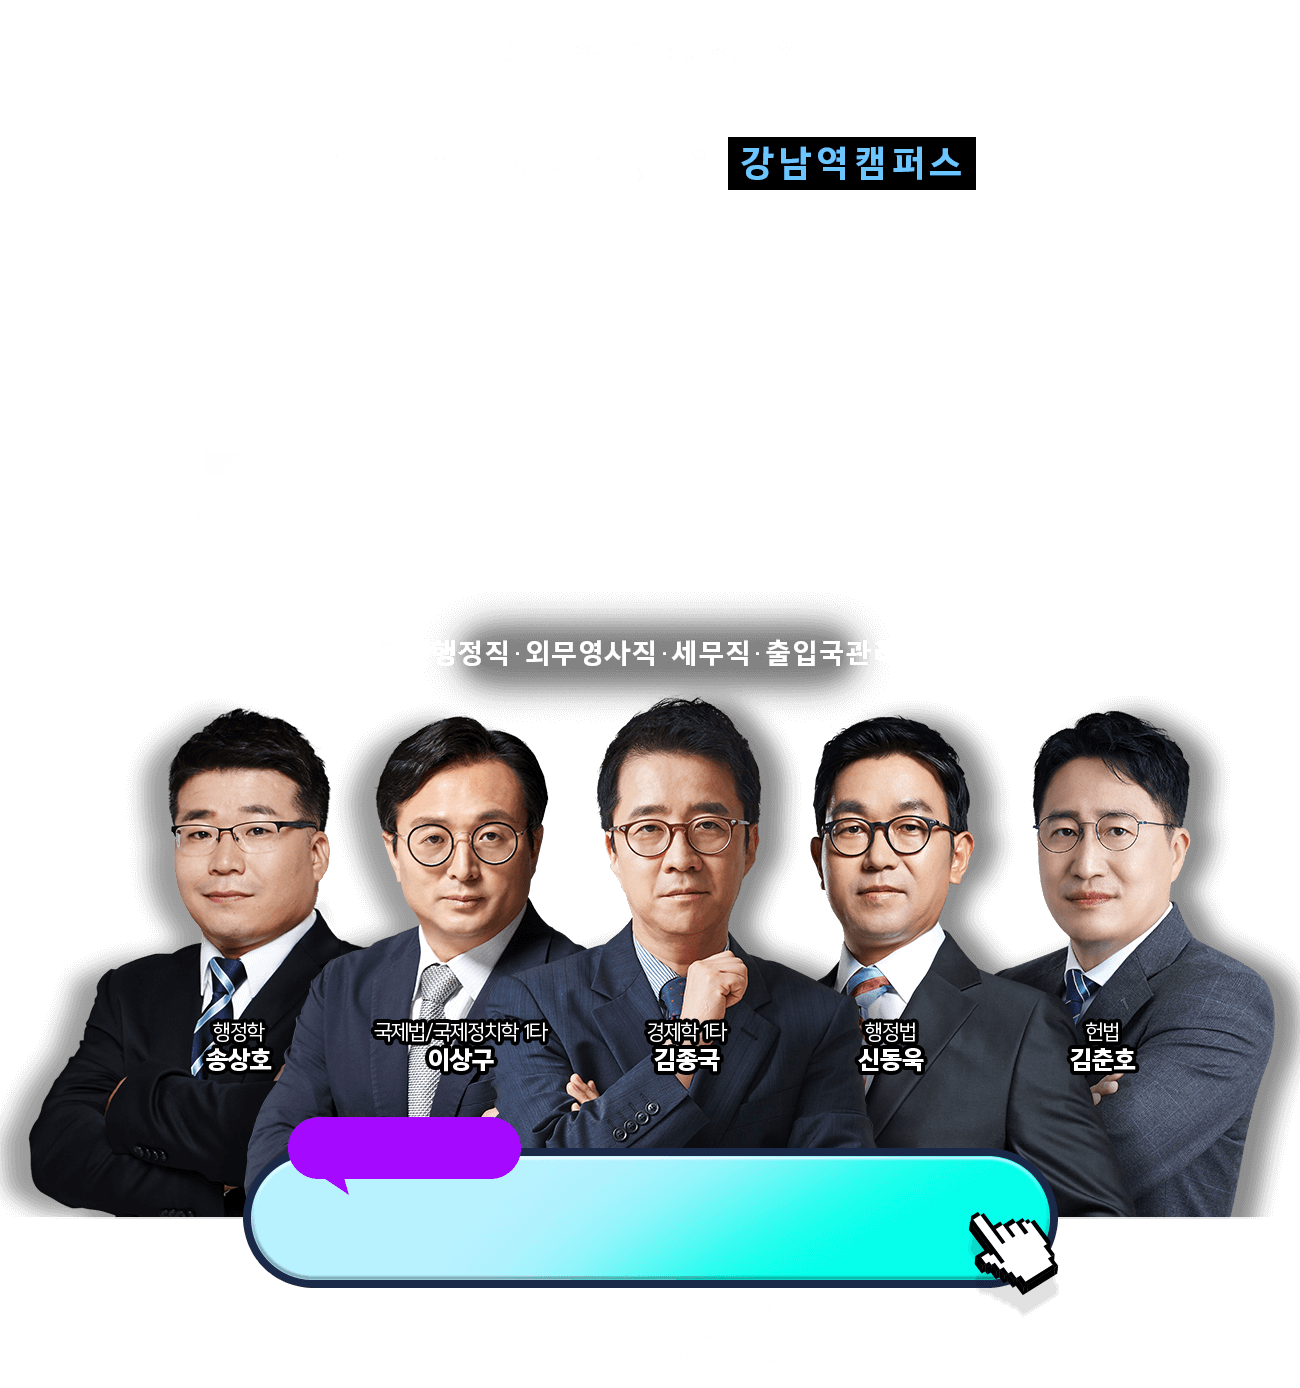 7급 특화관 해커스공무원 강남역캠퍼스